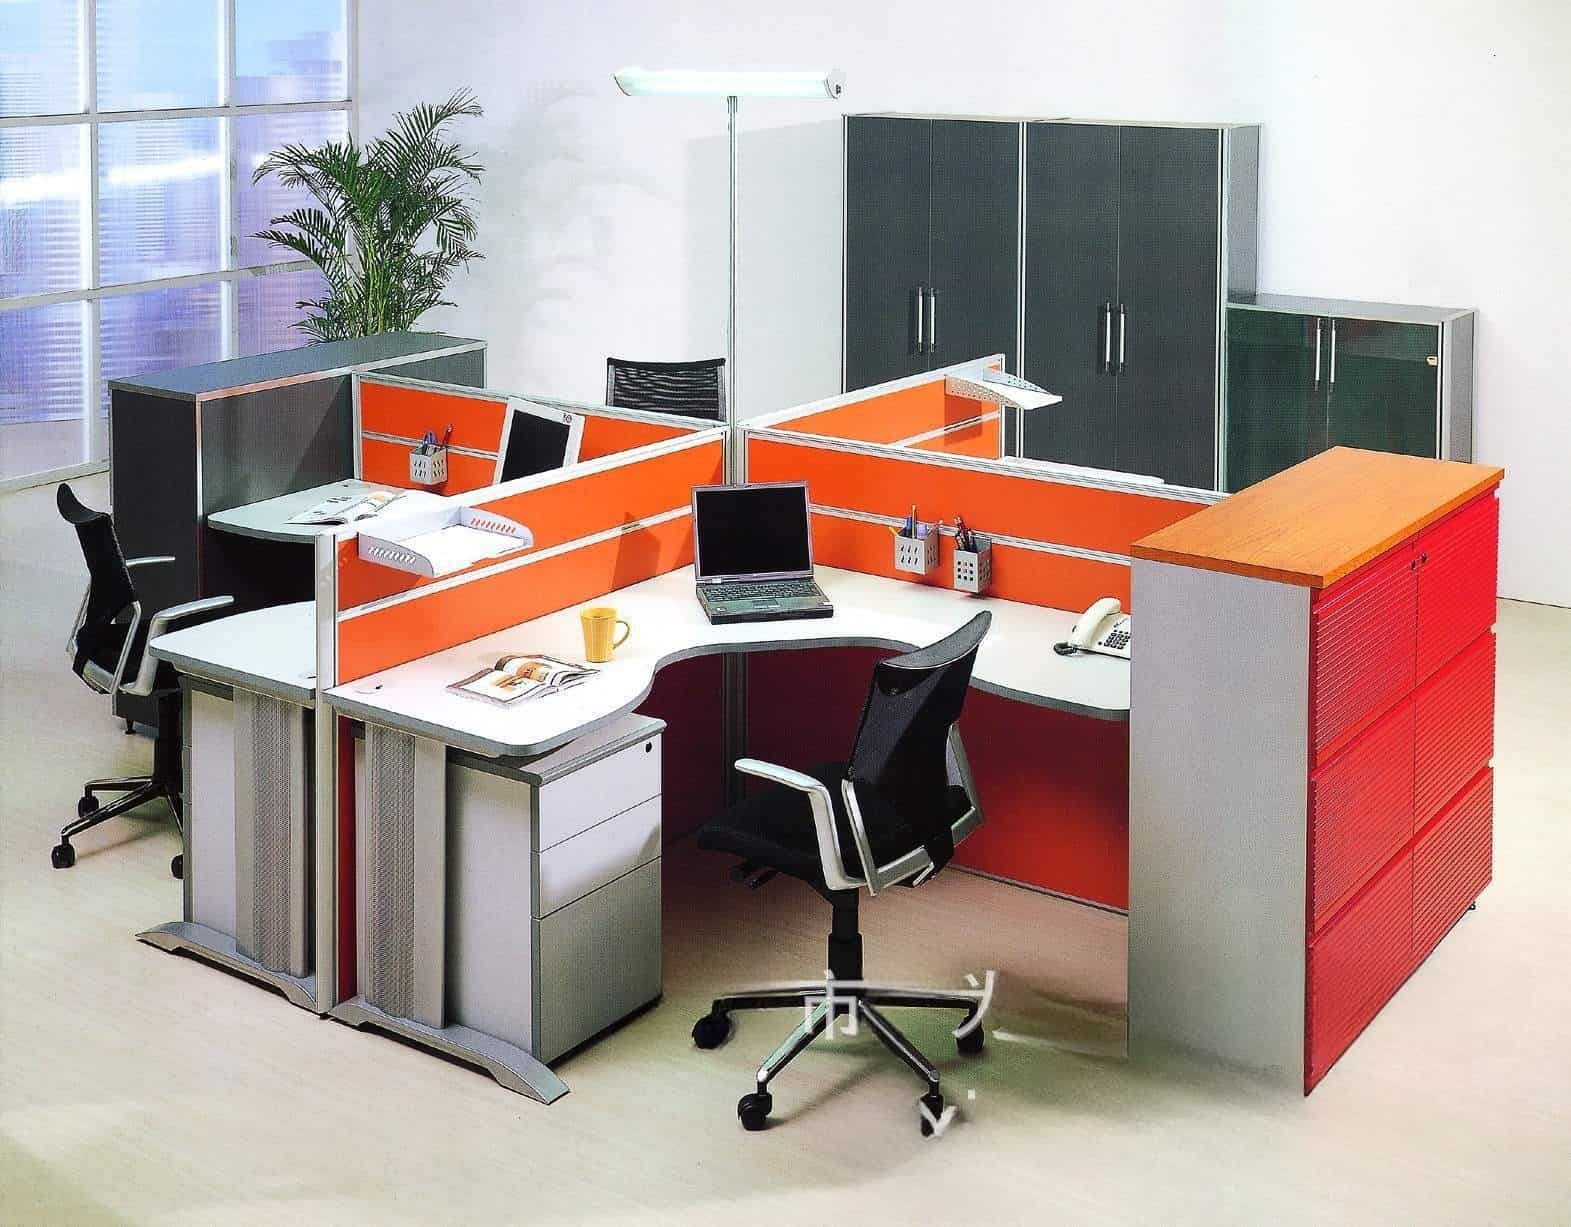 Chân bàn văn phòng bằng thép cao cấp QF01